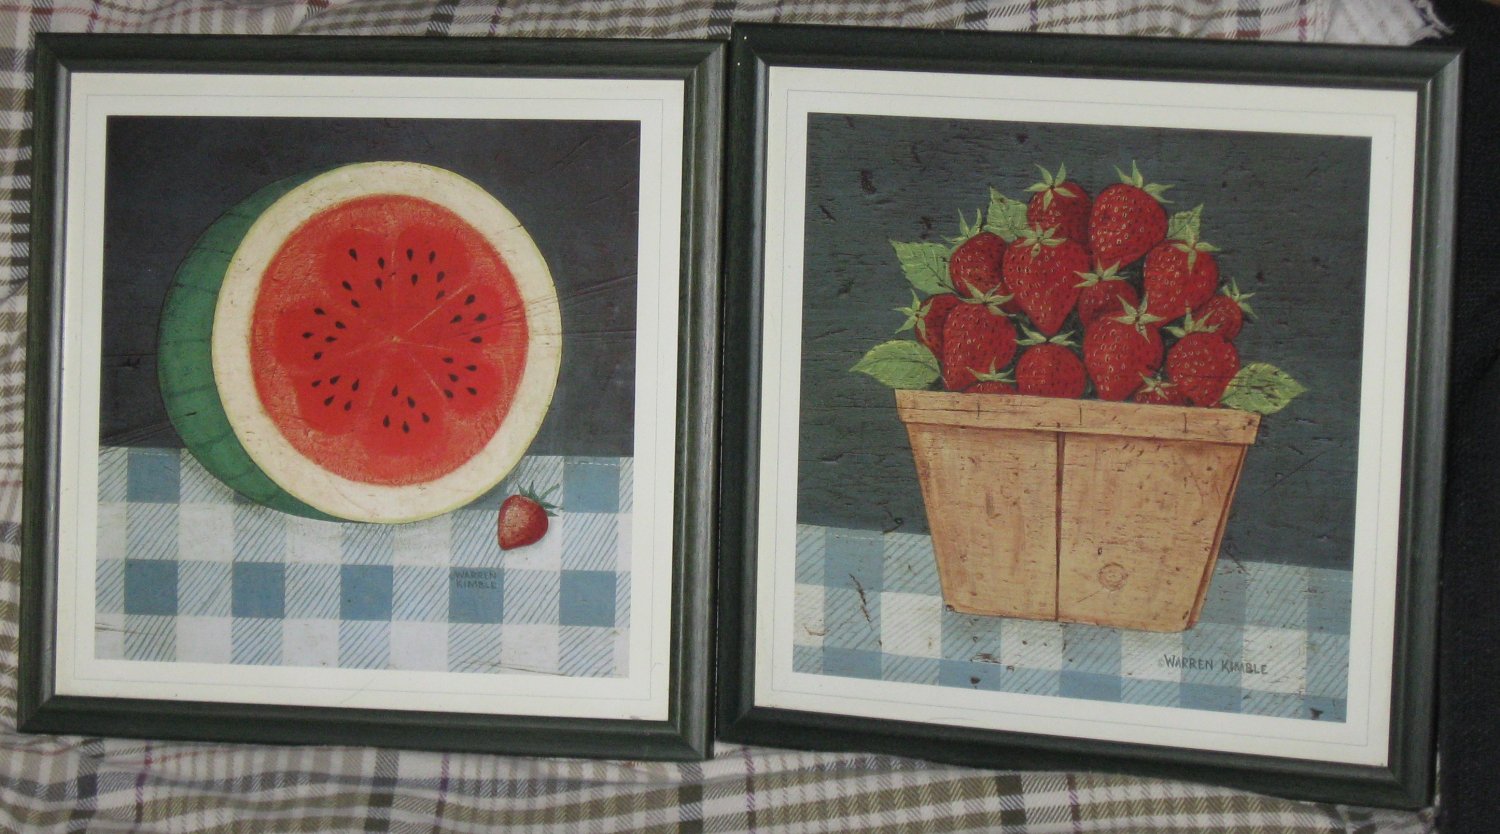 (2) Warren Kimble Art Strawberries In A Basket & Cut Watermelon On Table Framed